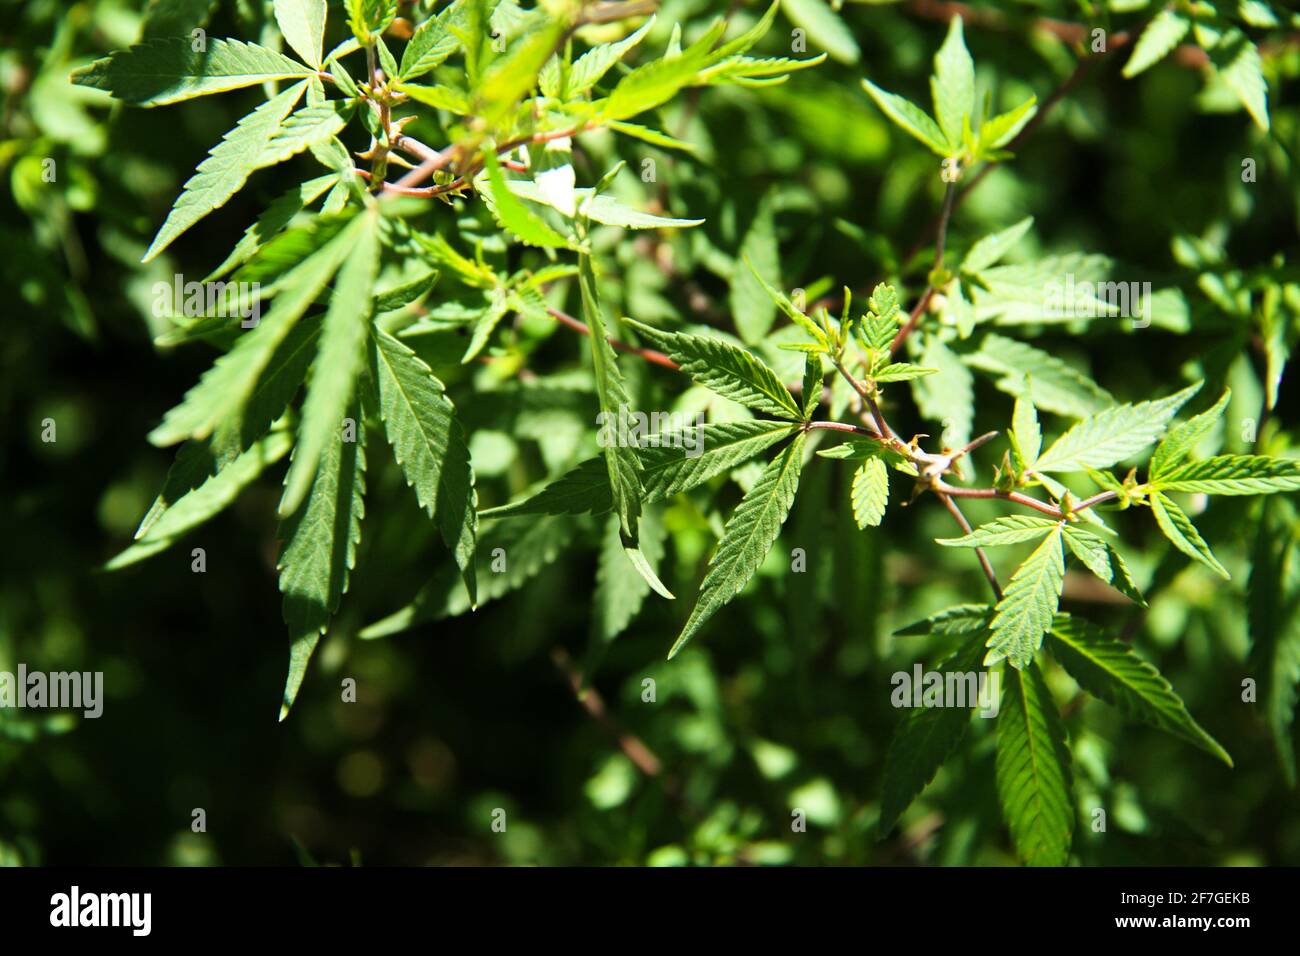 Wilde Marihuanapflanze Haschisch Green Cannabis Hanf Grass Pot Ganja Rauchen Drogen Abhängigkeit Abhängig Temptation Suchtmittel Medikamentöse Pflanze Stockfoto